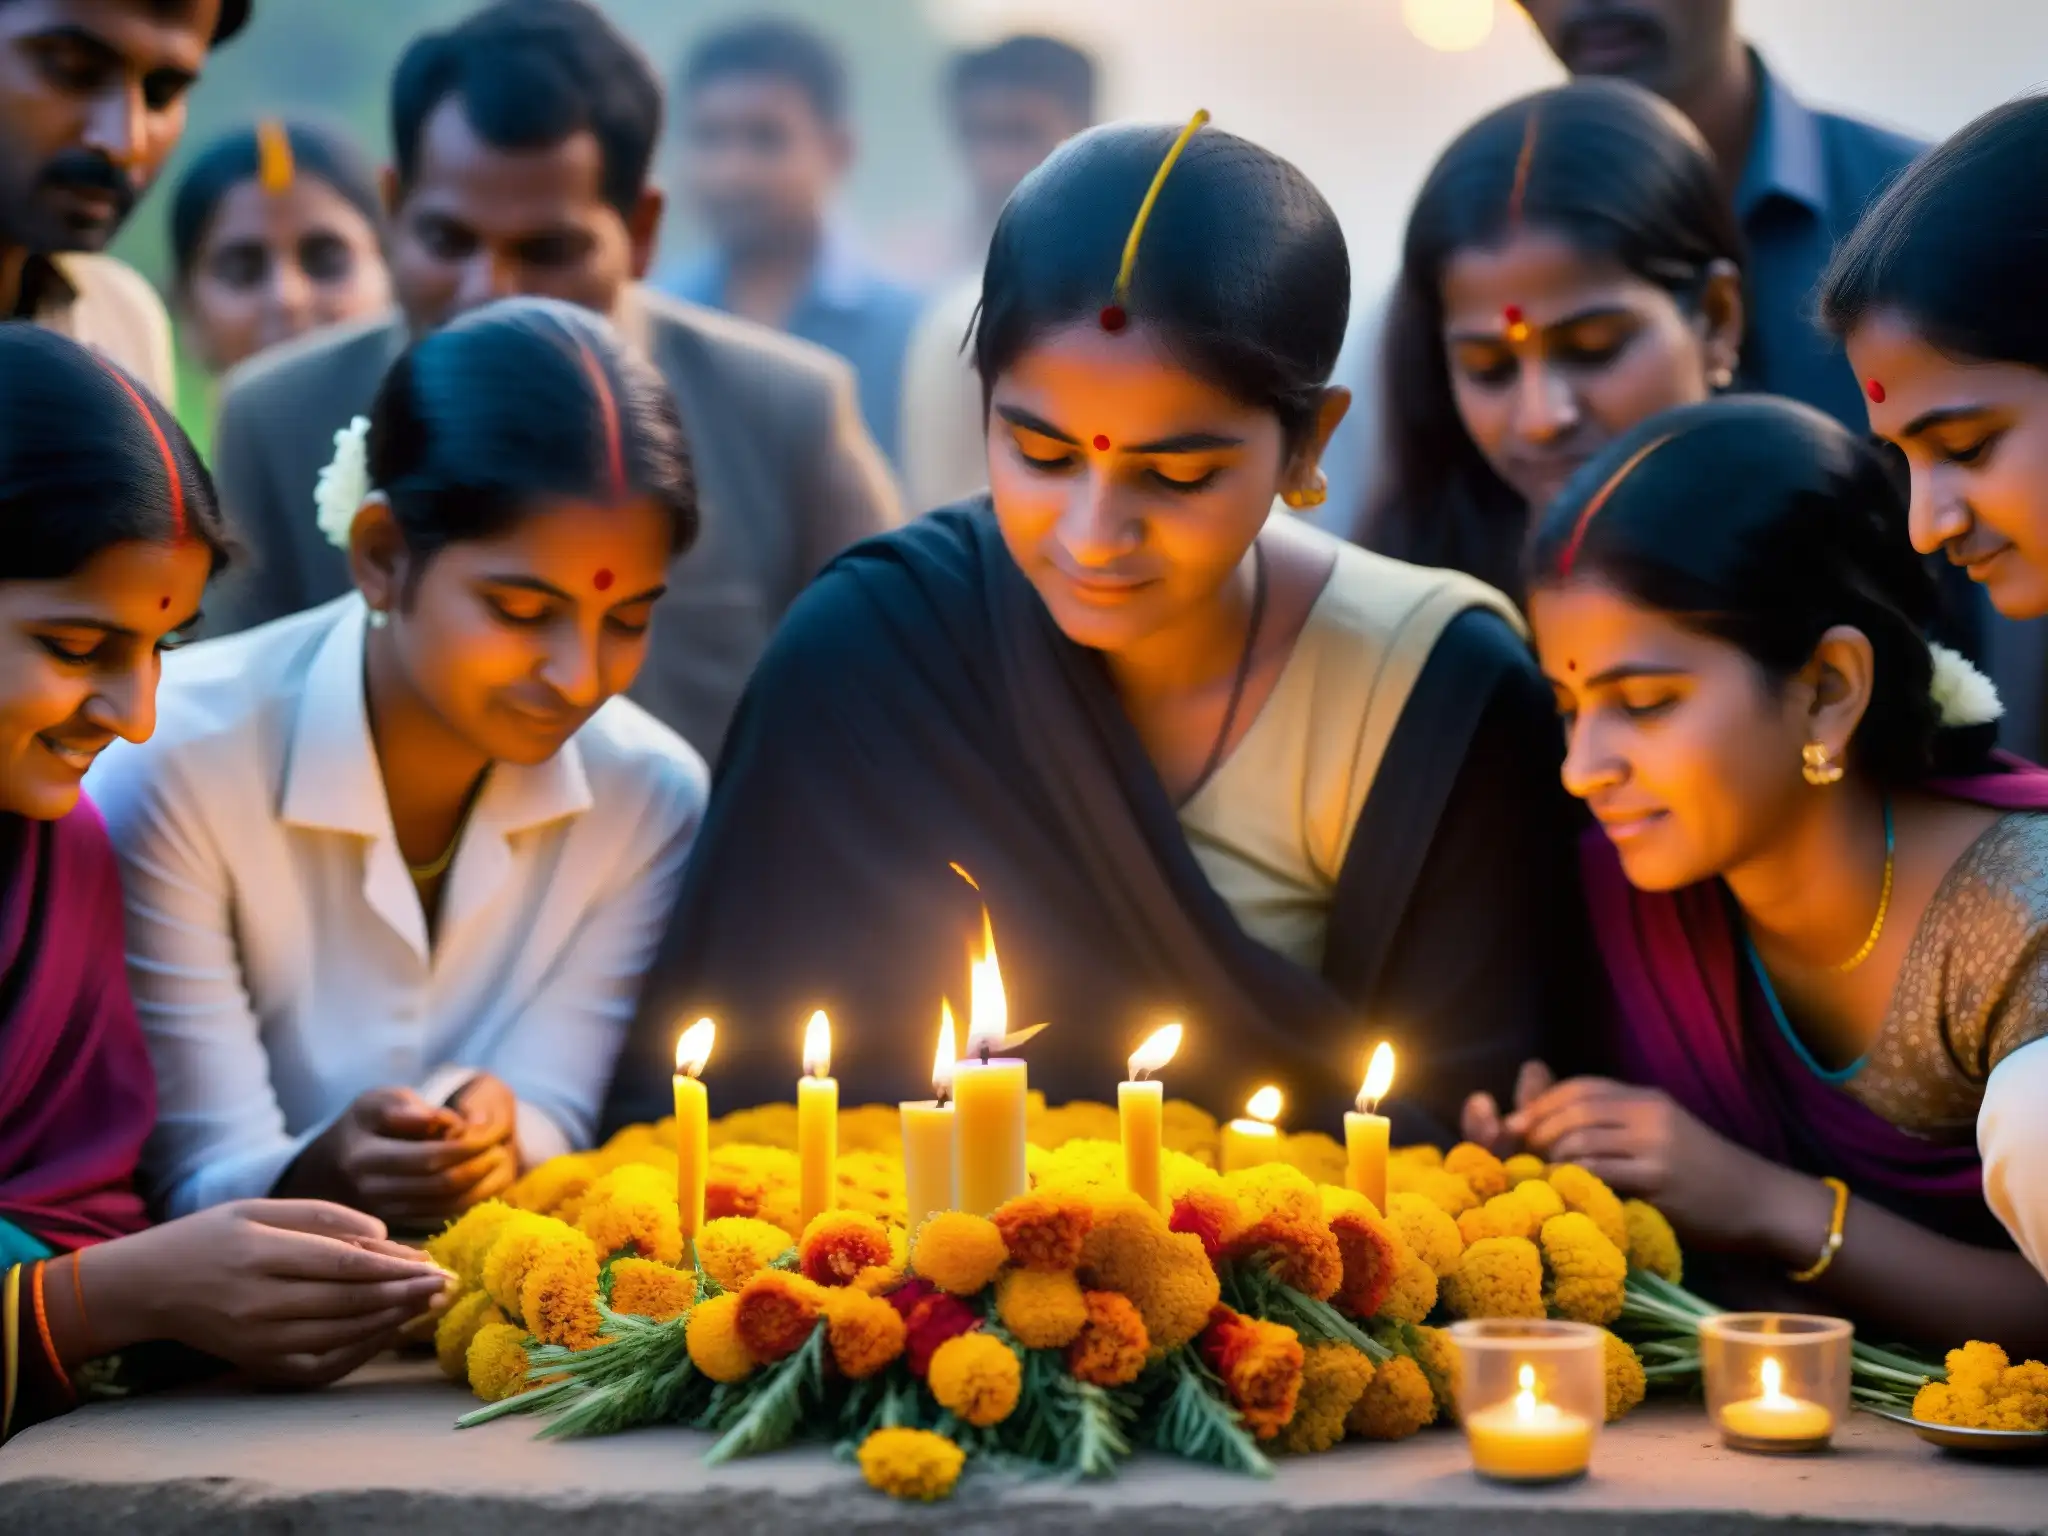 Un emotivo homenaje a los niños perdidos en Nithari, con aldeanos reunidos en un memorial con guirnaldas y velas